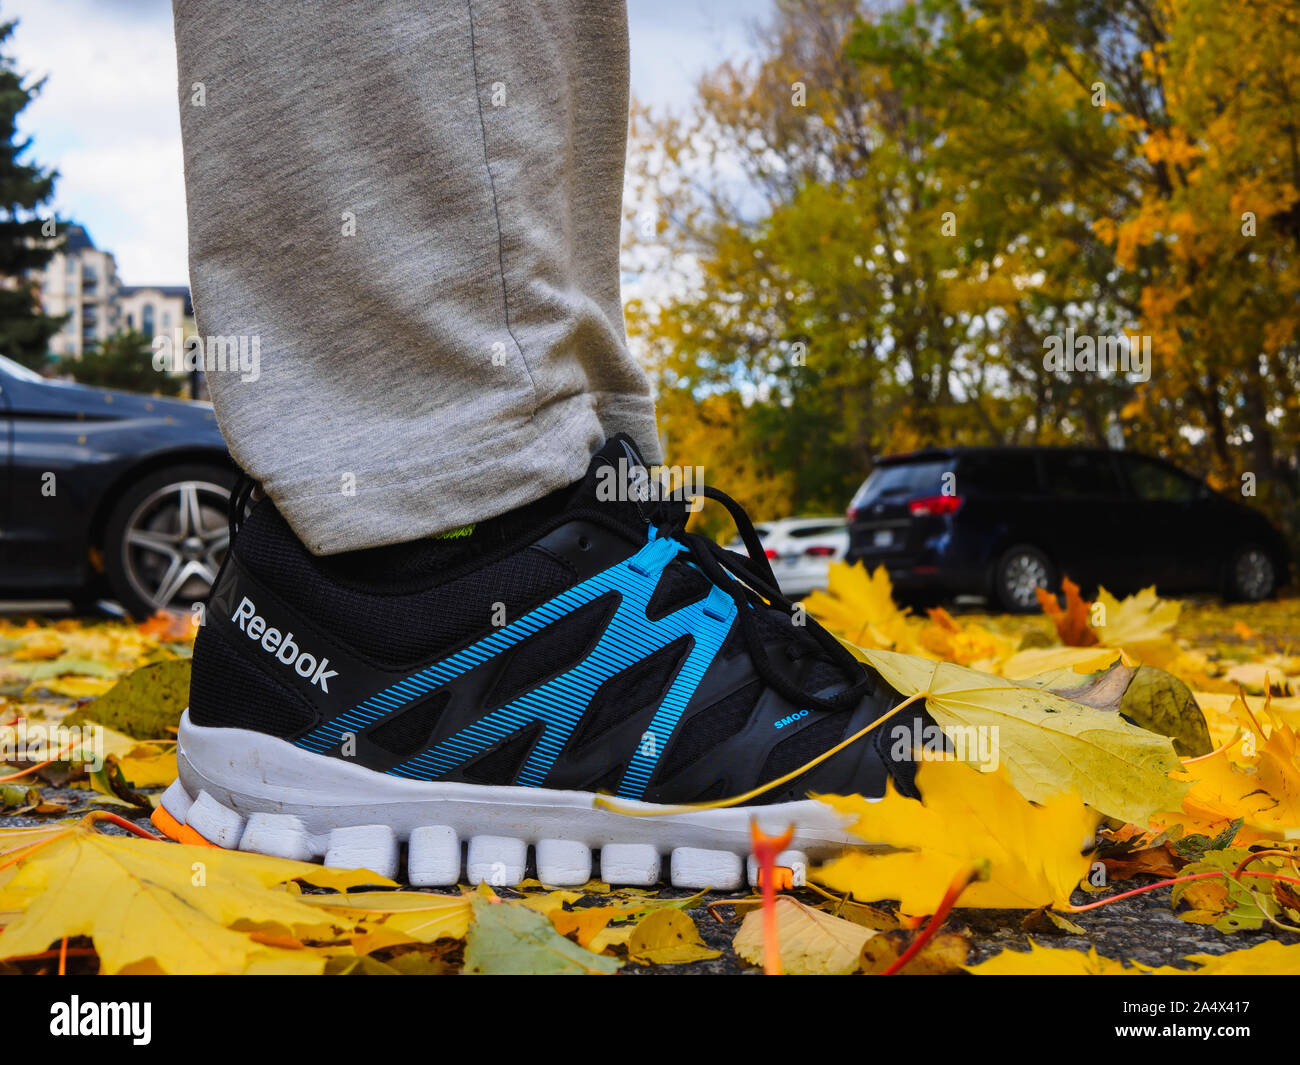 Reebok RealFlex 4 scarpe comode all'aperto in autunno, coperto dal colore giallo acero foglie. Foto Stock